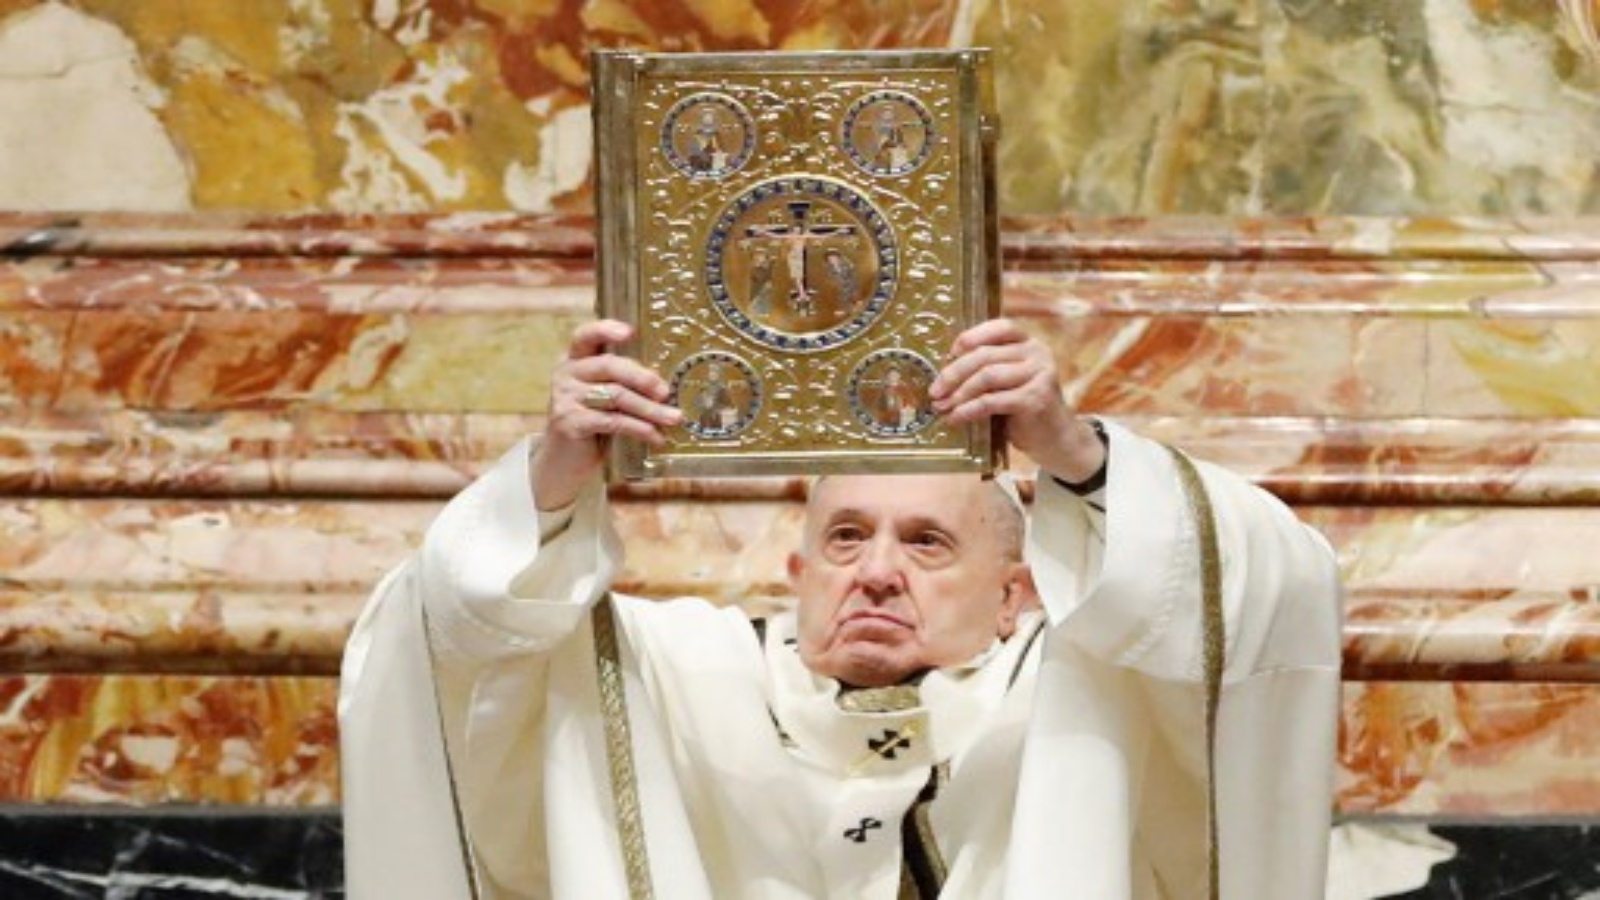 يحمل البابا فرانسيس كتاب الصلوات المقدس أثناء احتفاله بالقداس بمناسبة عيد الغطاس في 6 يناير 2021 في كاتدرائية القديس بطرس بالفاتيكان.